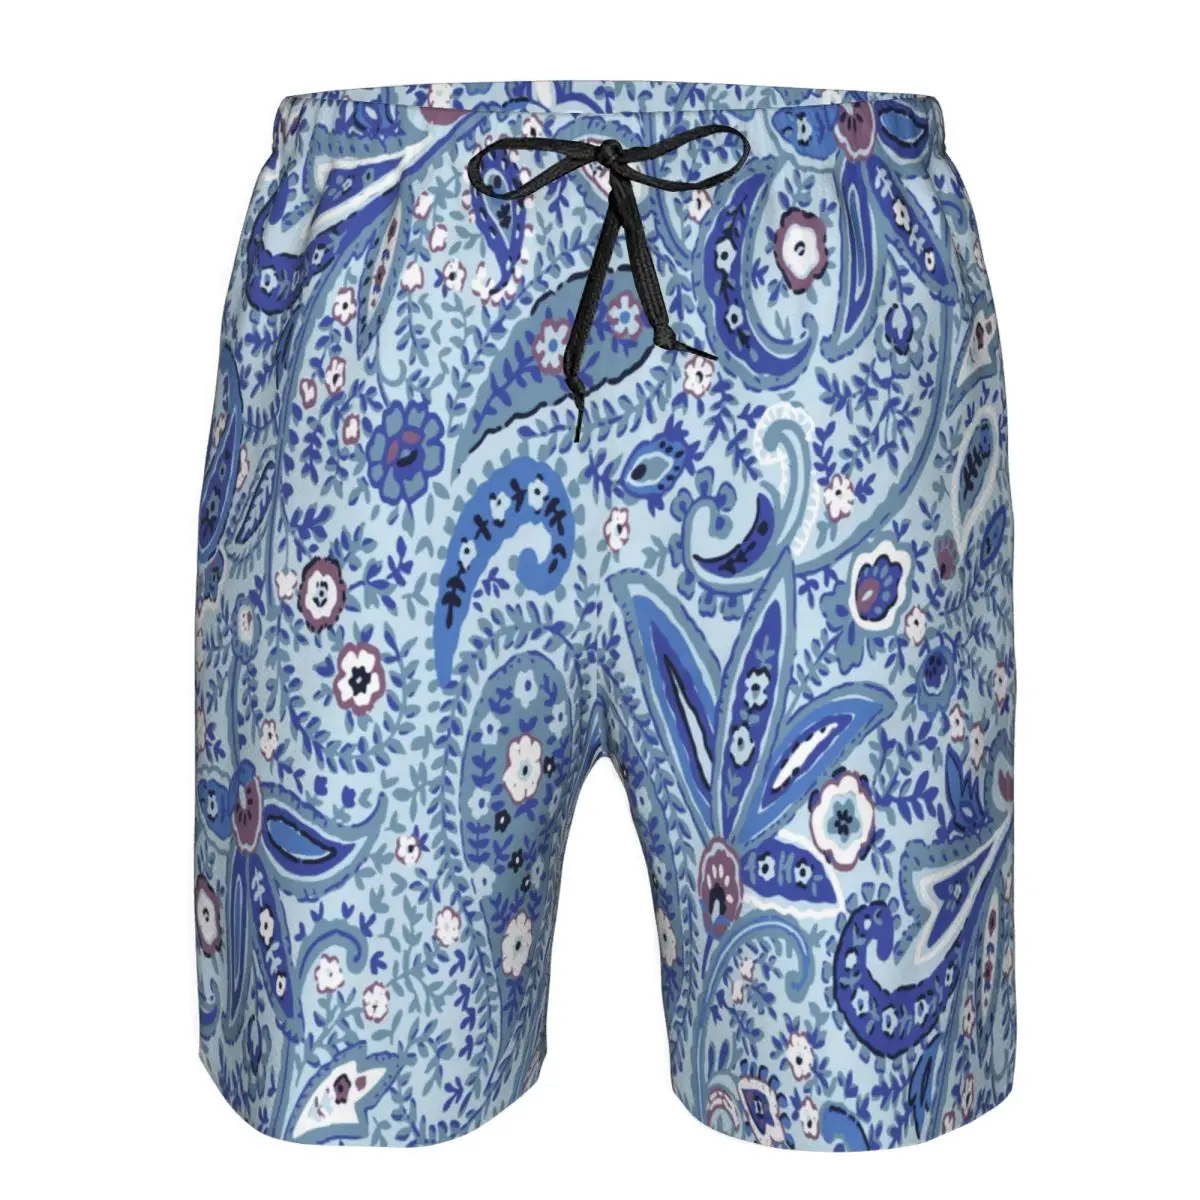 Paisley 3D-печать летние мужские шорты пляжные гавайский стиль отдыха на шнурке домашние шорты